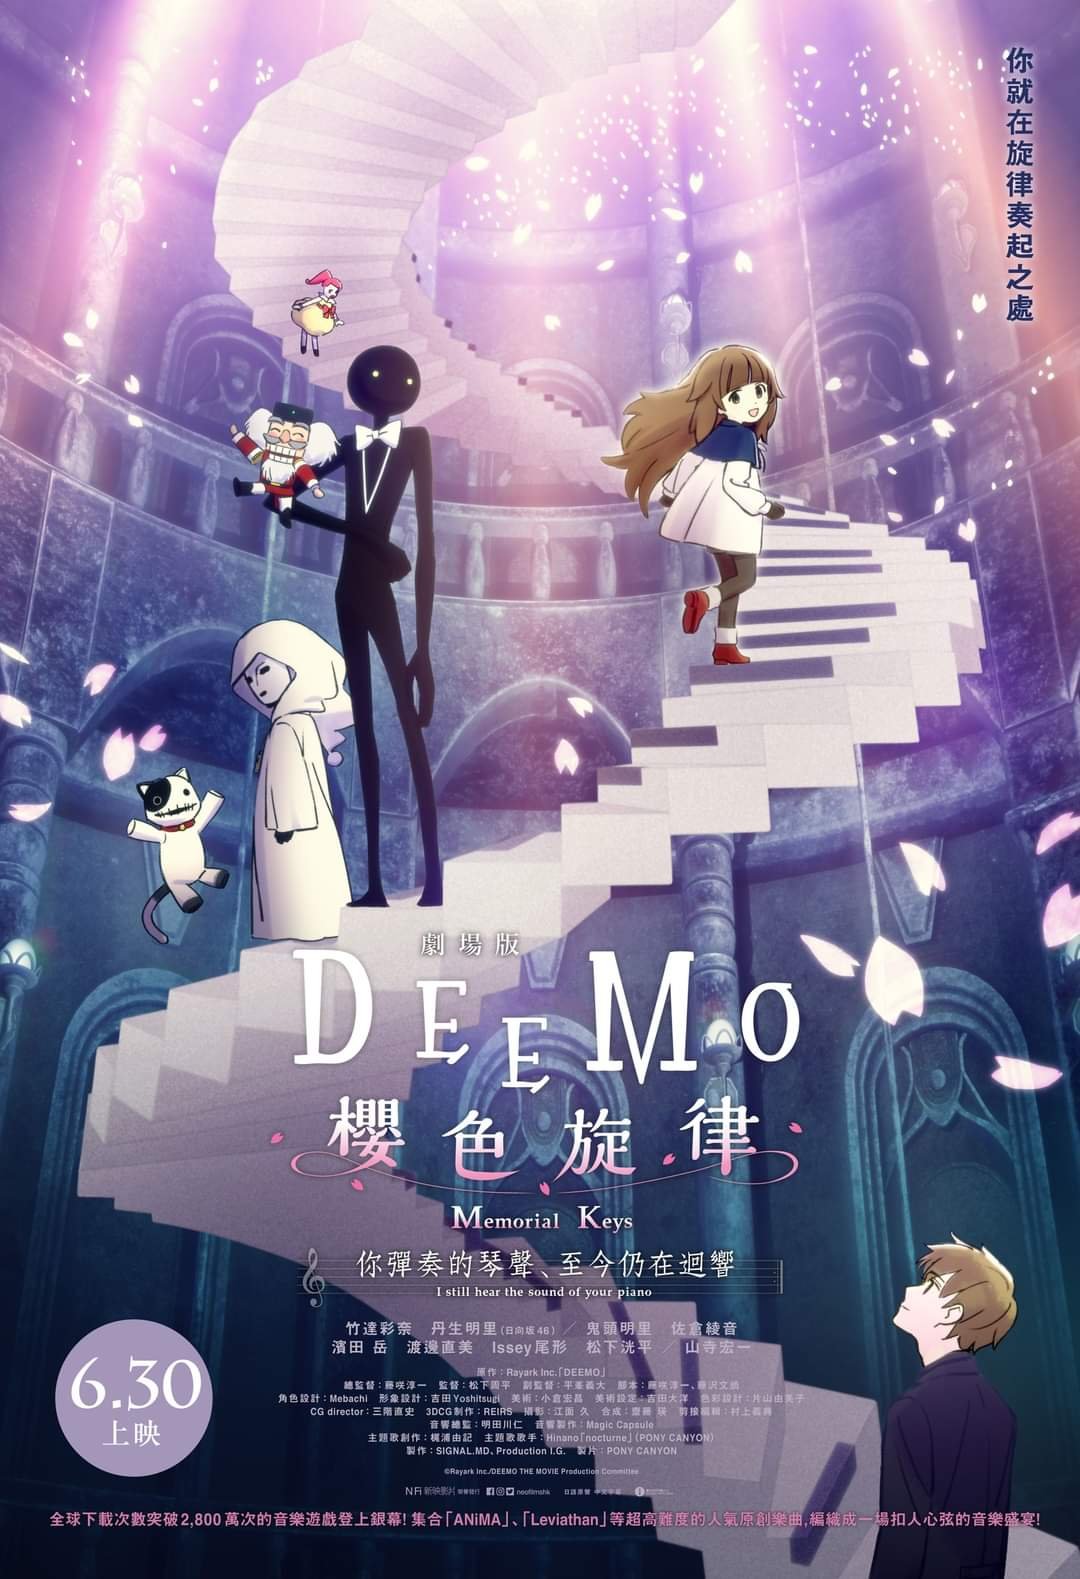 劇場版 DEEMO 櫻色旋律 —你彈奏的琴聲、 至今仍在迴響—電影圖片 - FB_IMG_1654844254087_1655000267.jpg